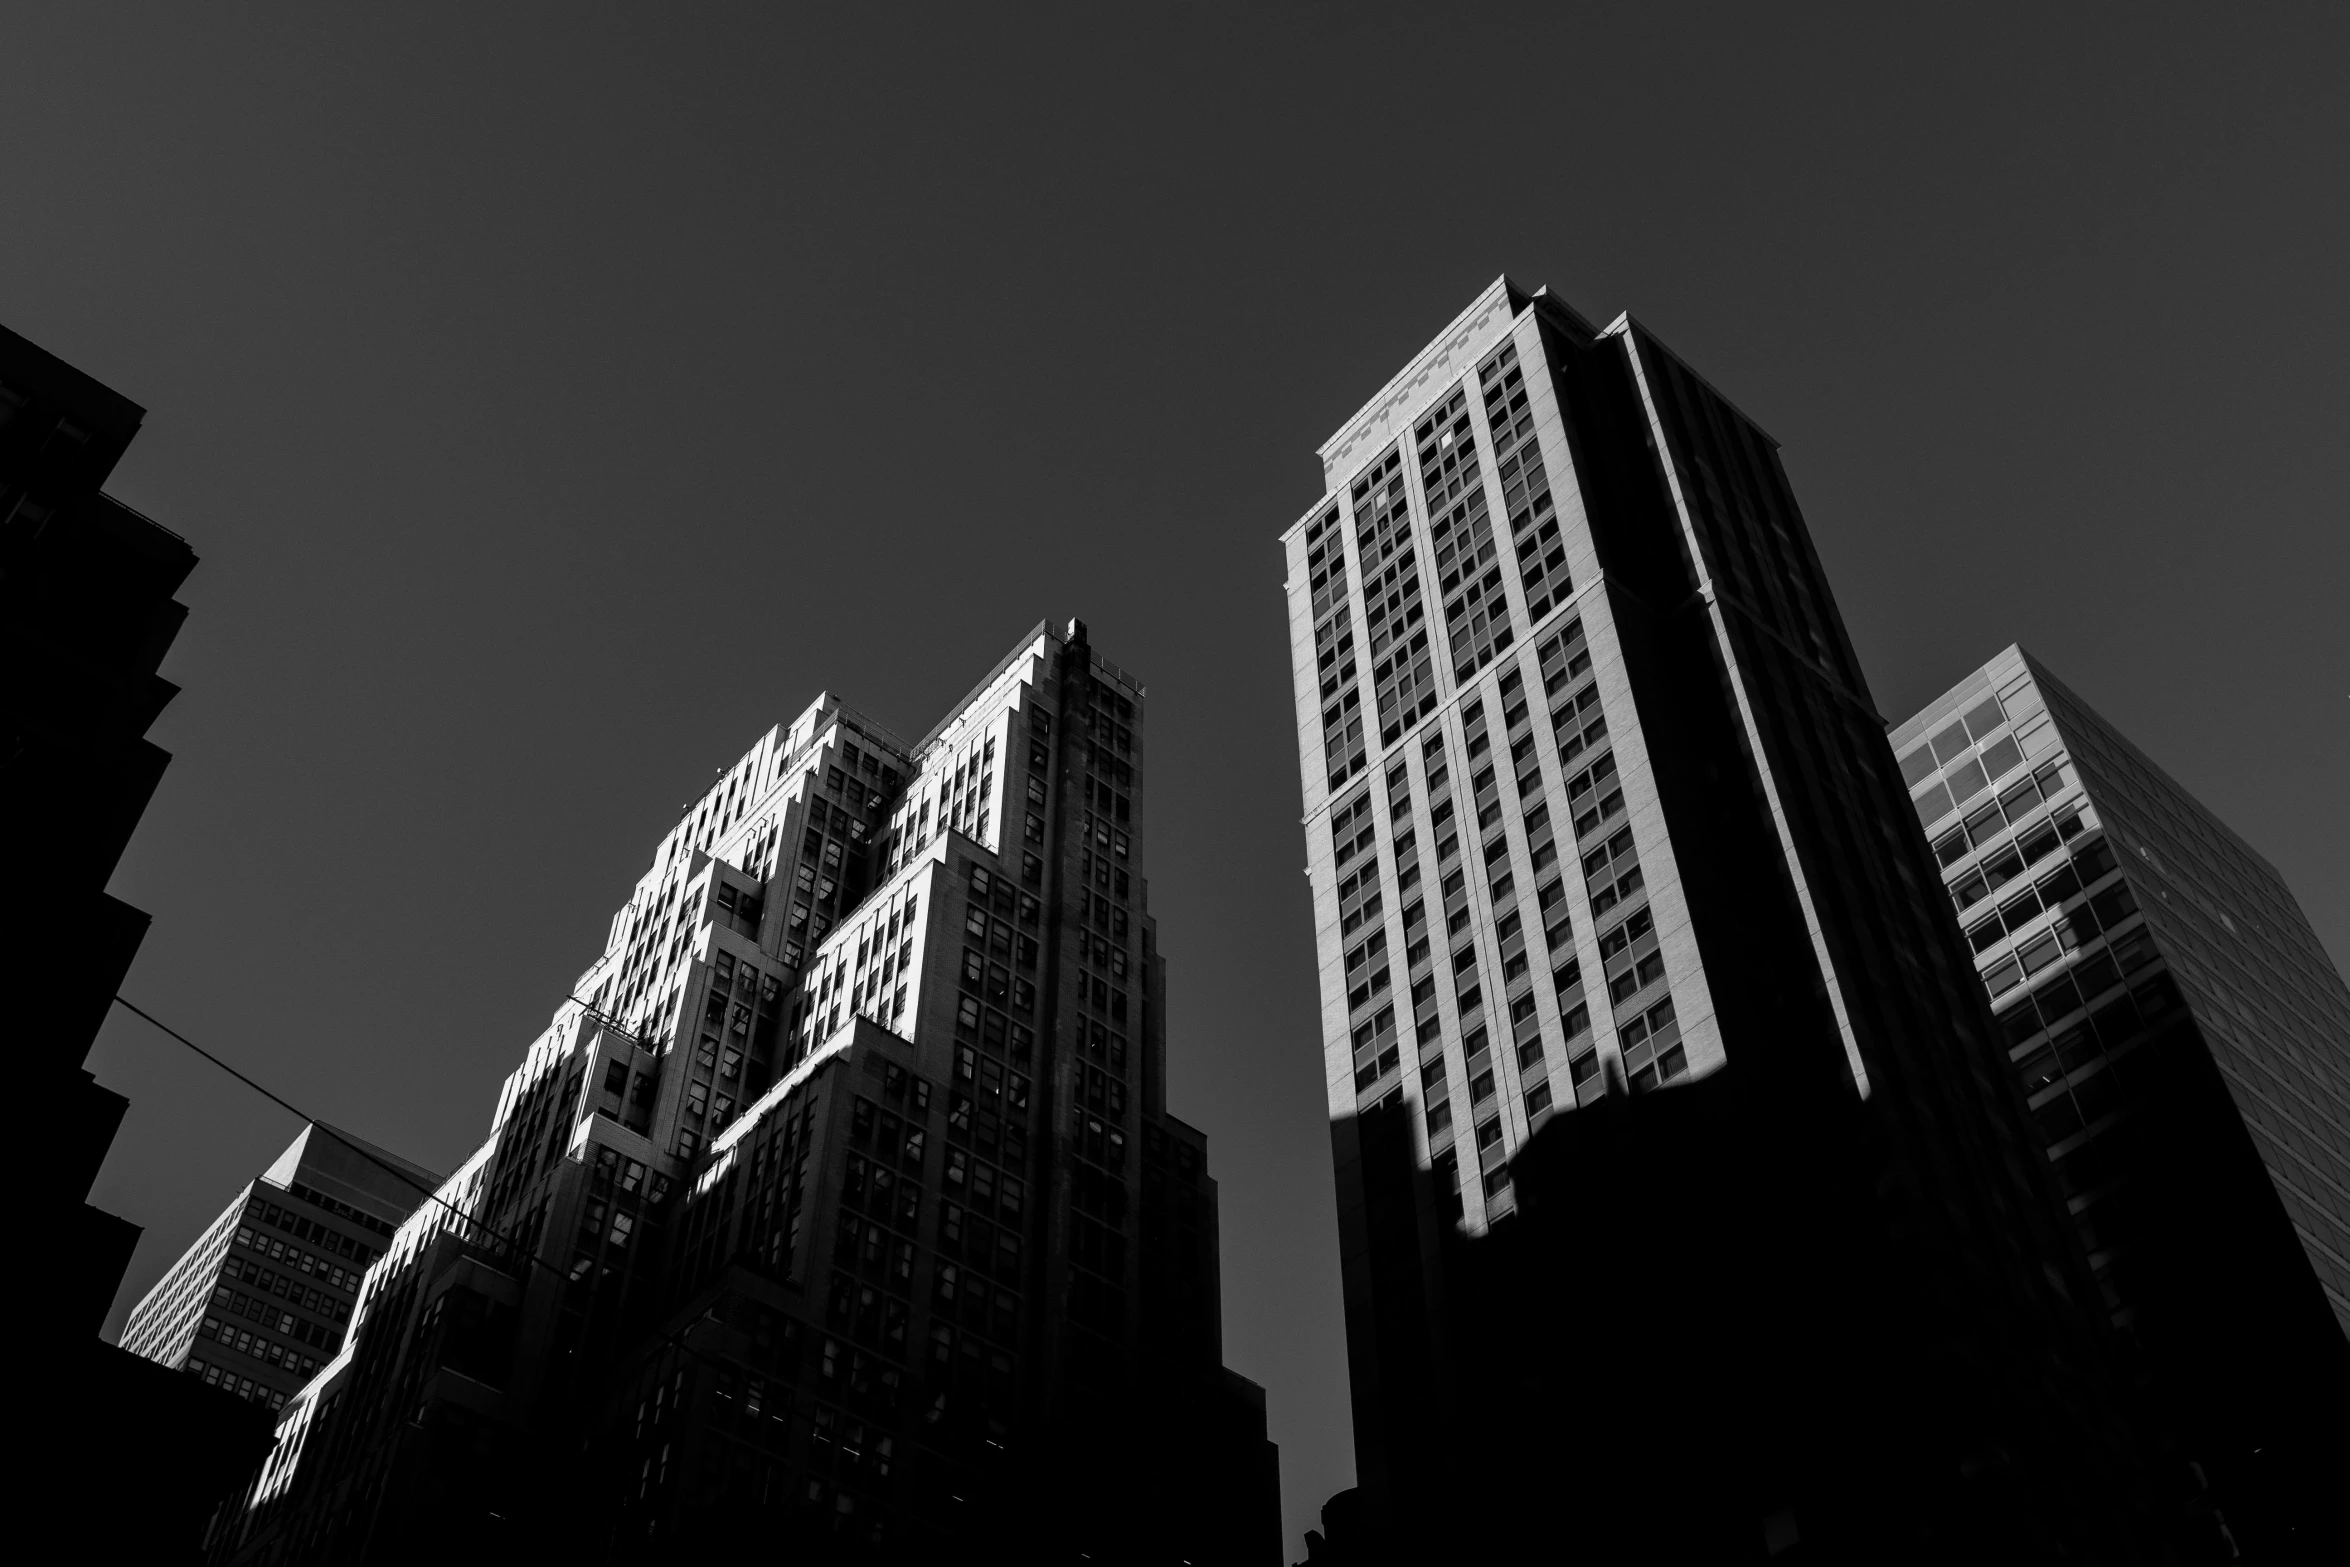 a line of tall buildings against a dark sky